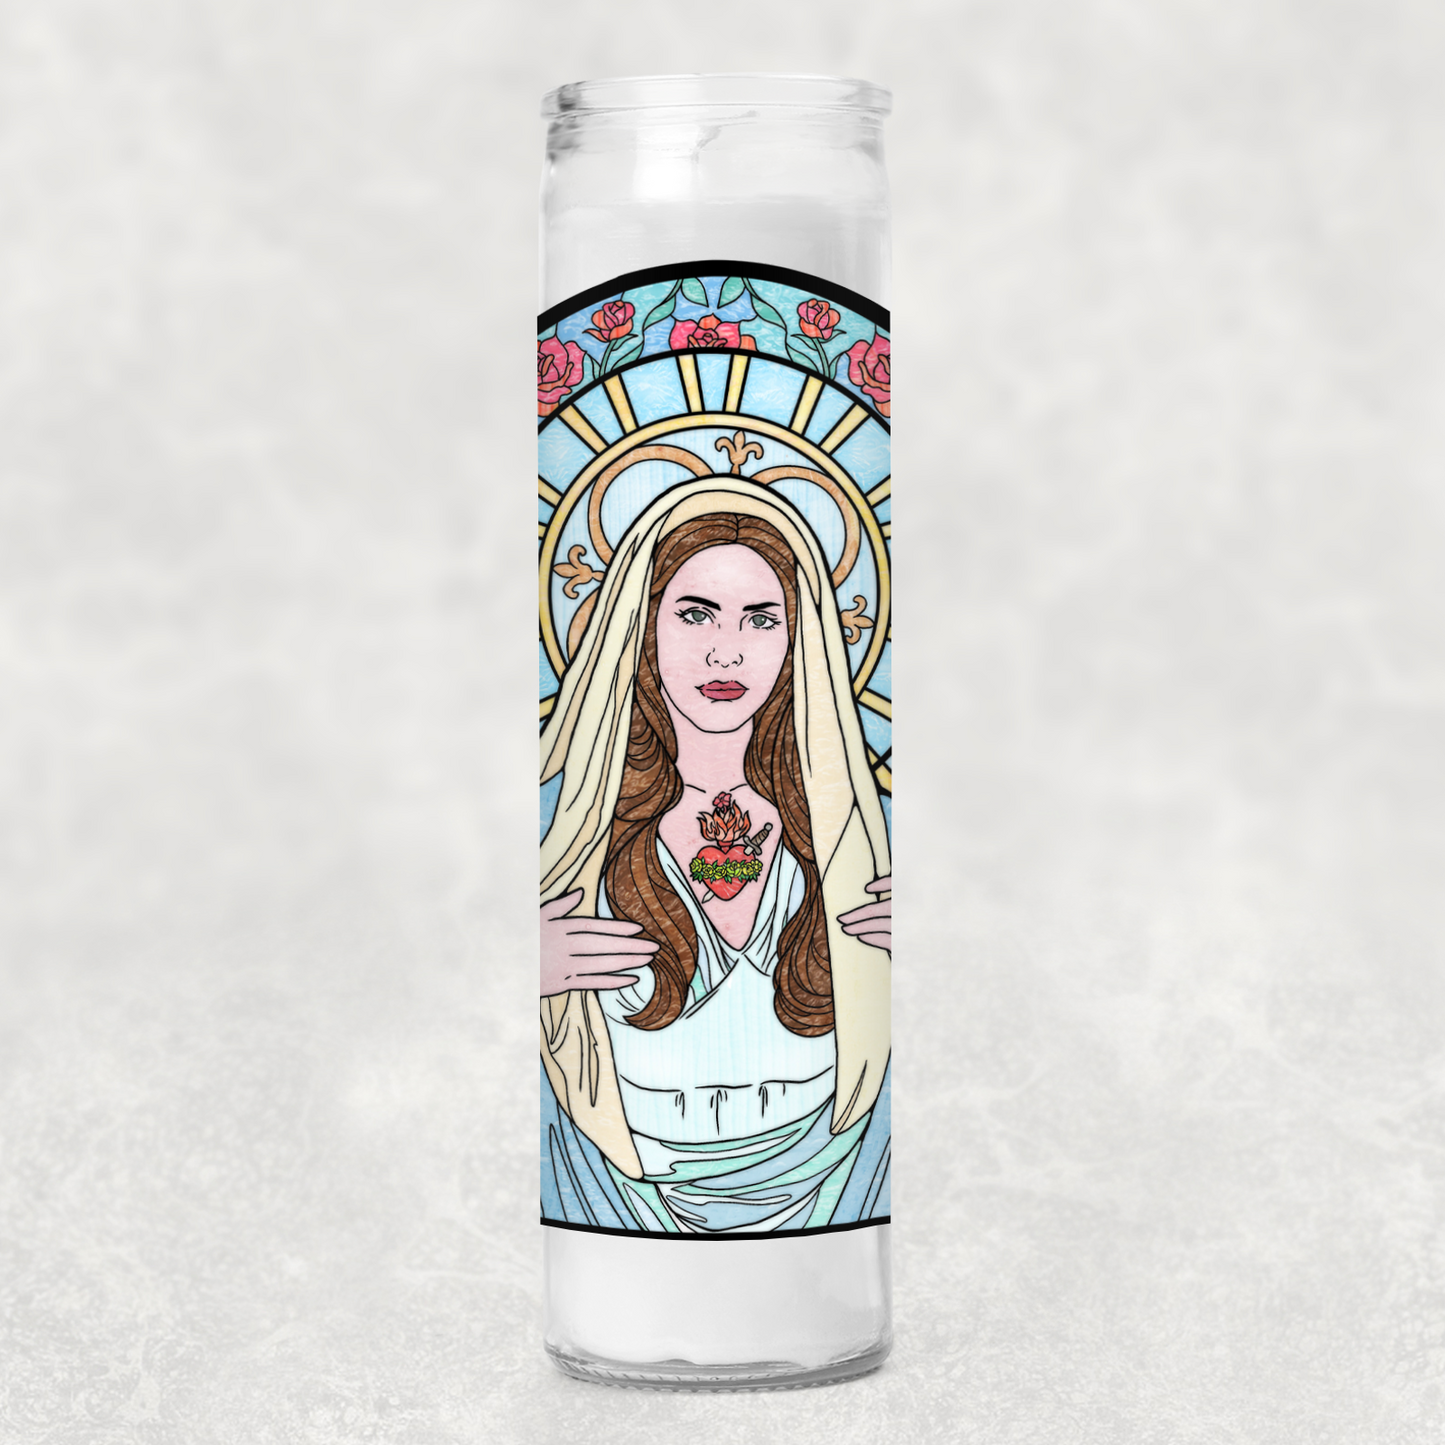 Saint Lana Prayer Vigil Candle